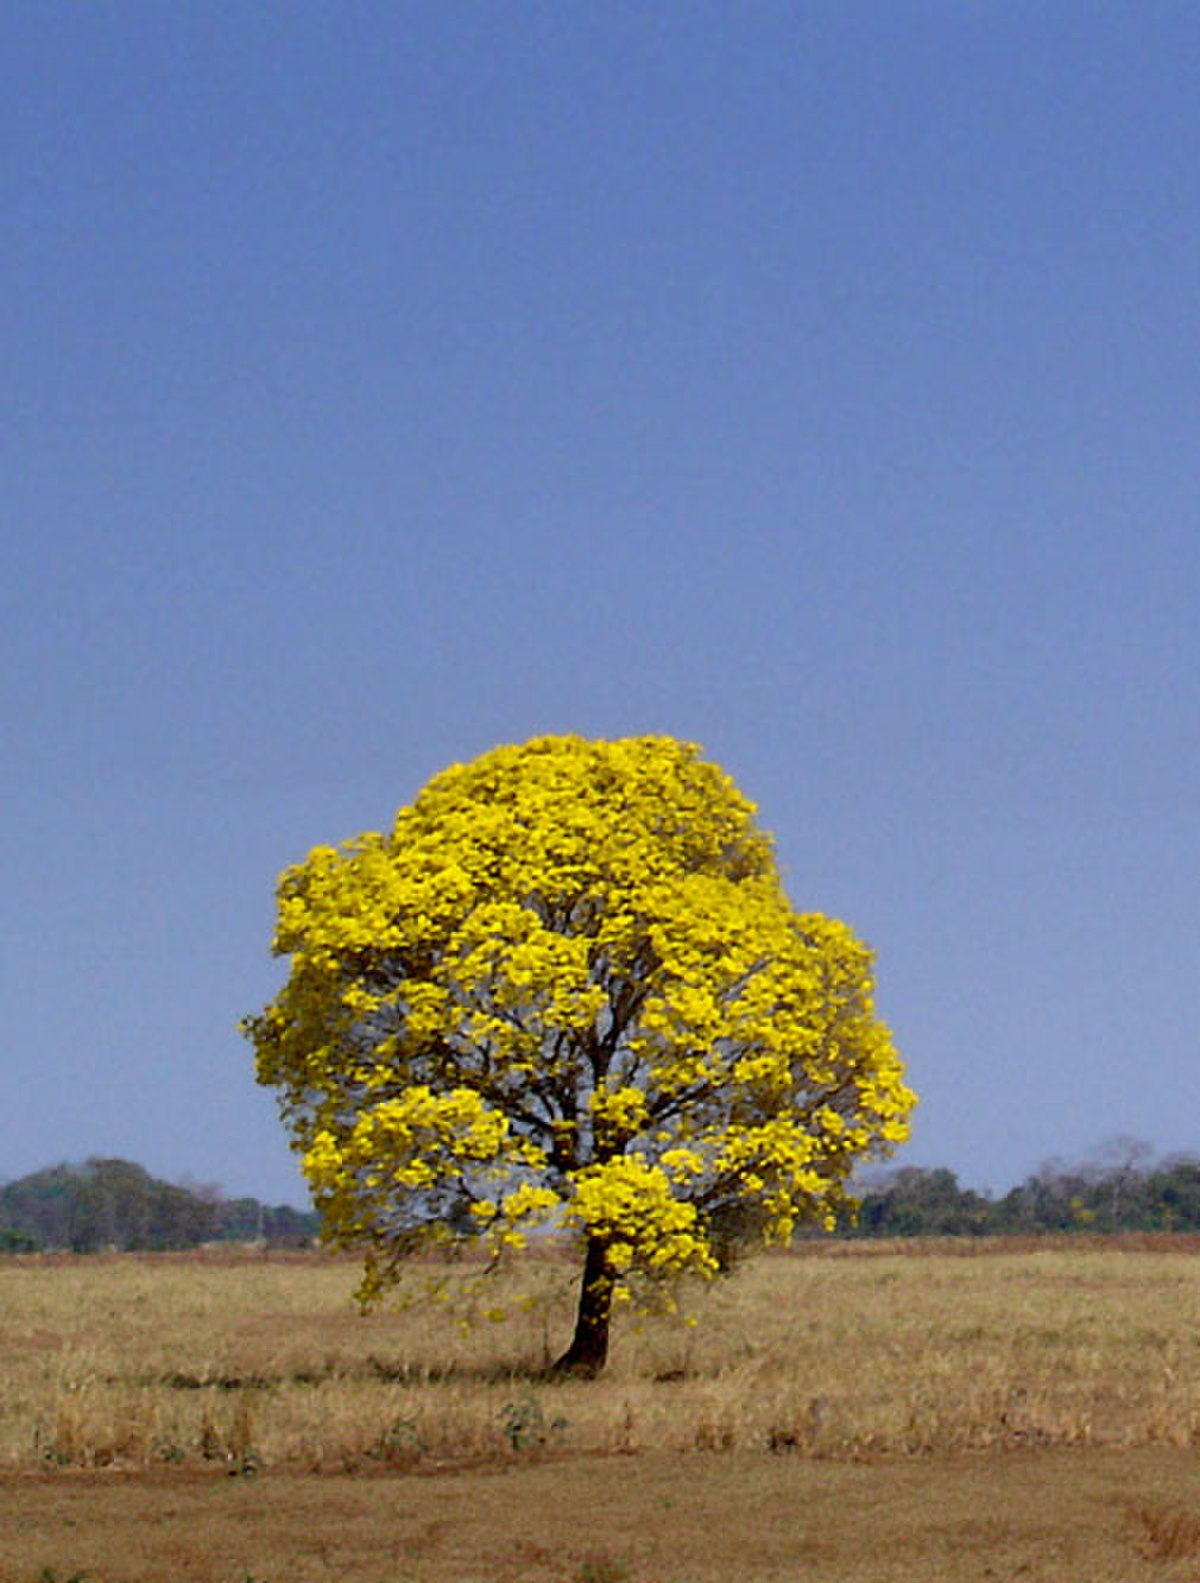  Ipê jaune (Tabebuia chrysotricha)